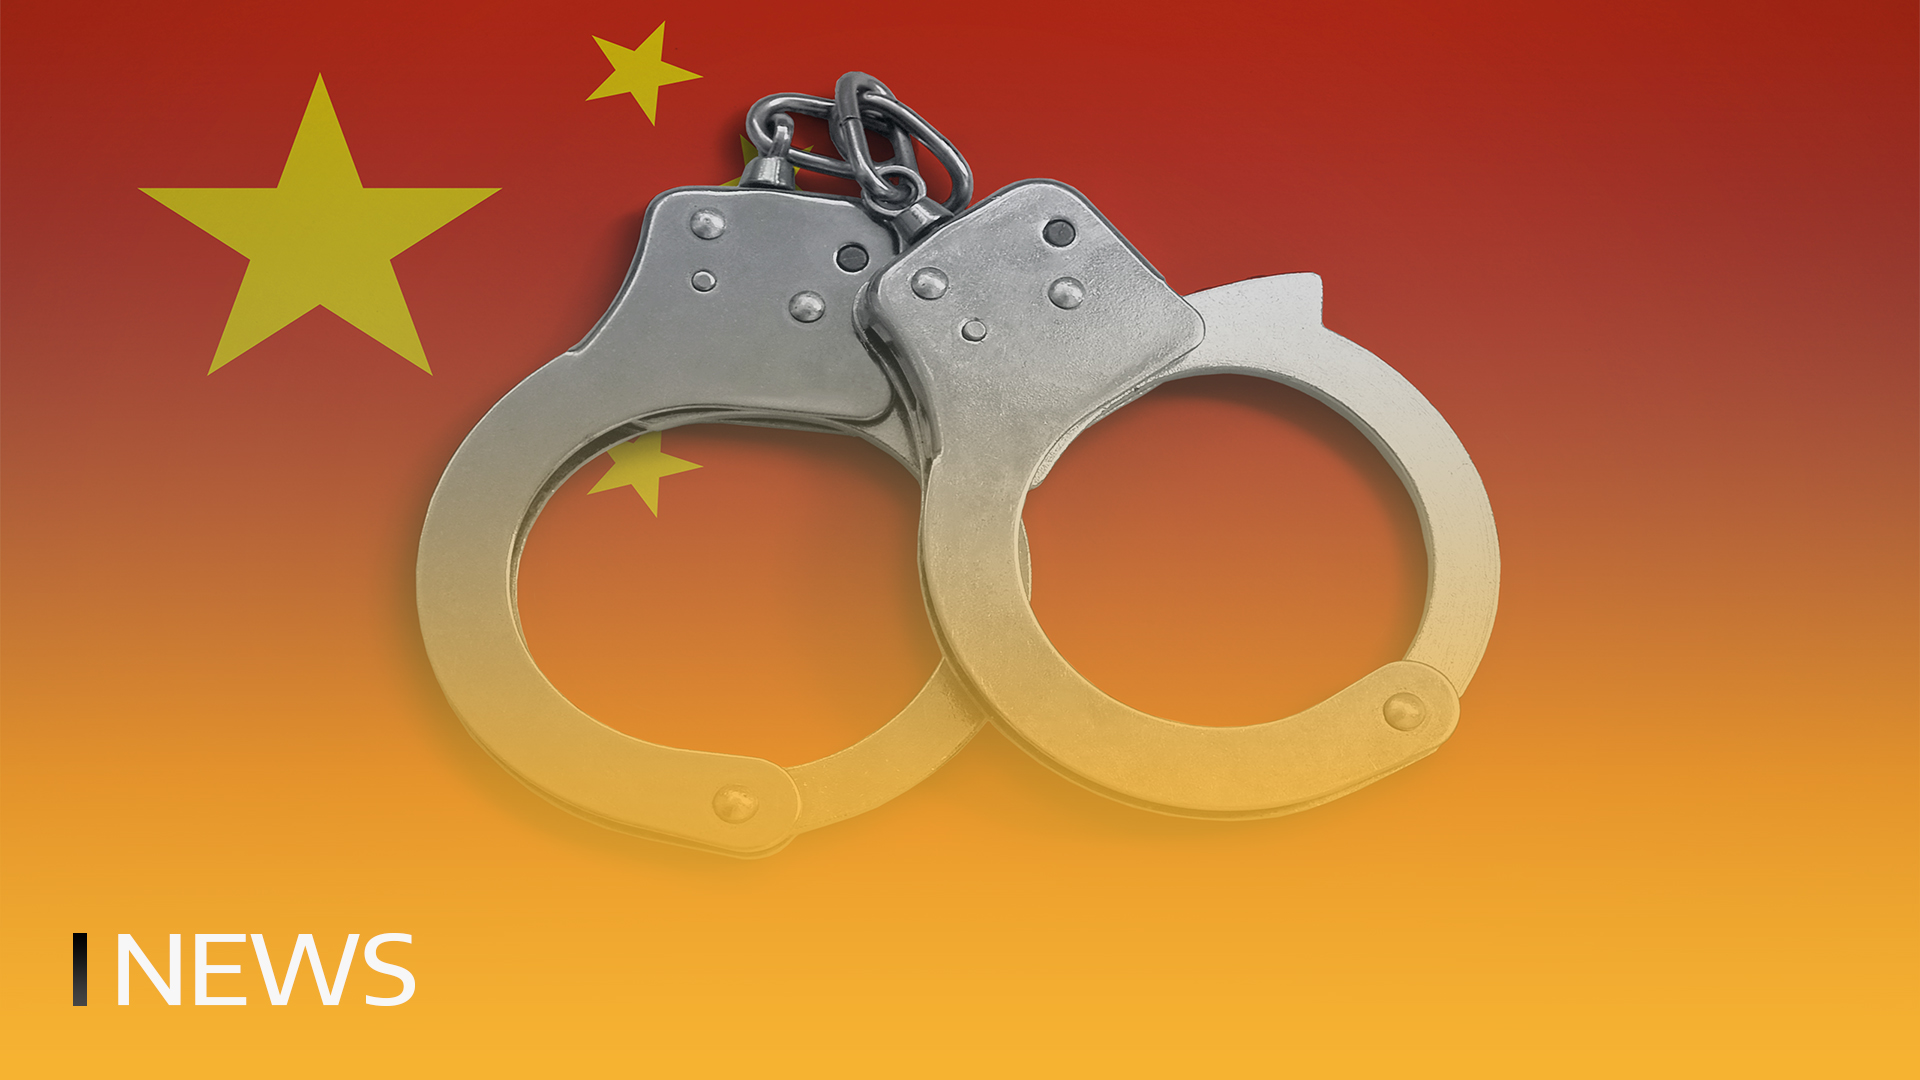 Čína zabavila 1,9 miliardy USDT z nelegální operace